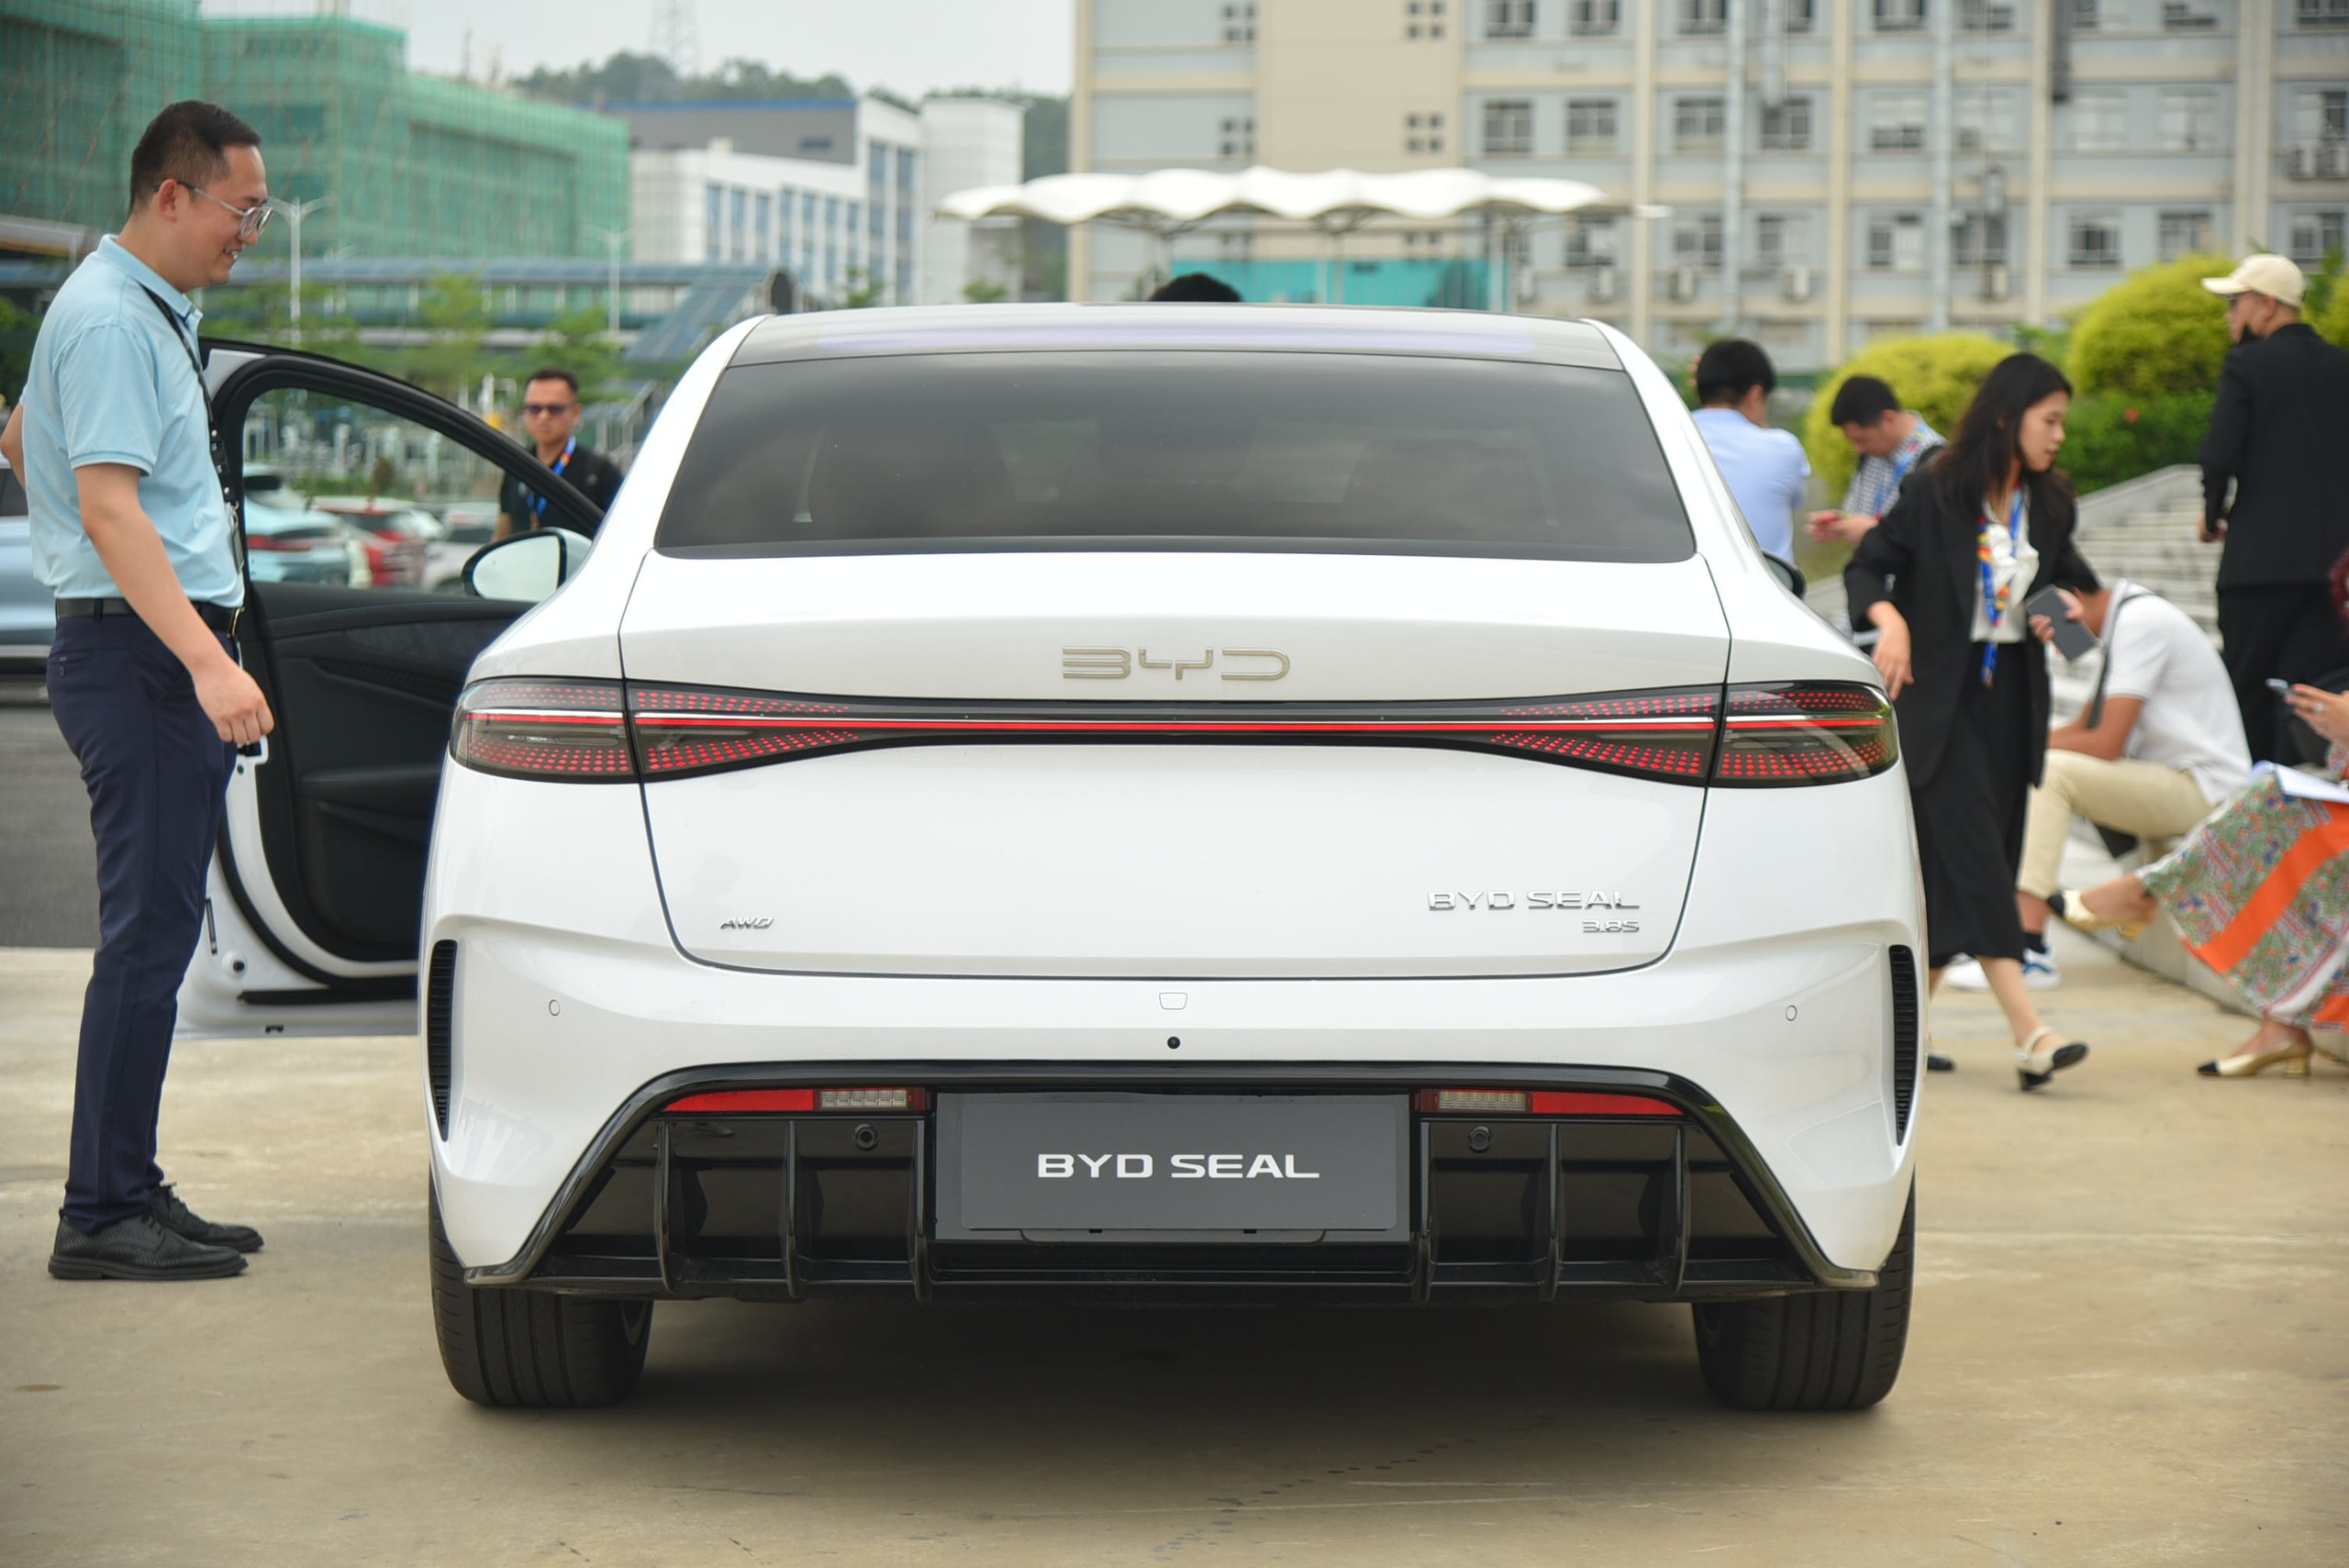 BYD Seal sắp về Việt Nam, bộ ảnh thực tế này cho thấy mẫu sedan ngang cỡ Camry này có gì 'hot' để chờ đợi - Ảnh 7.